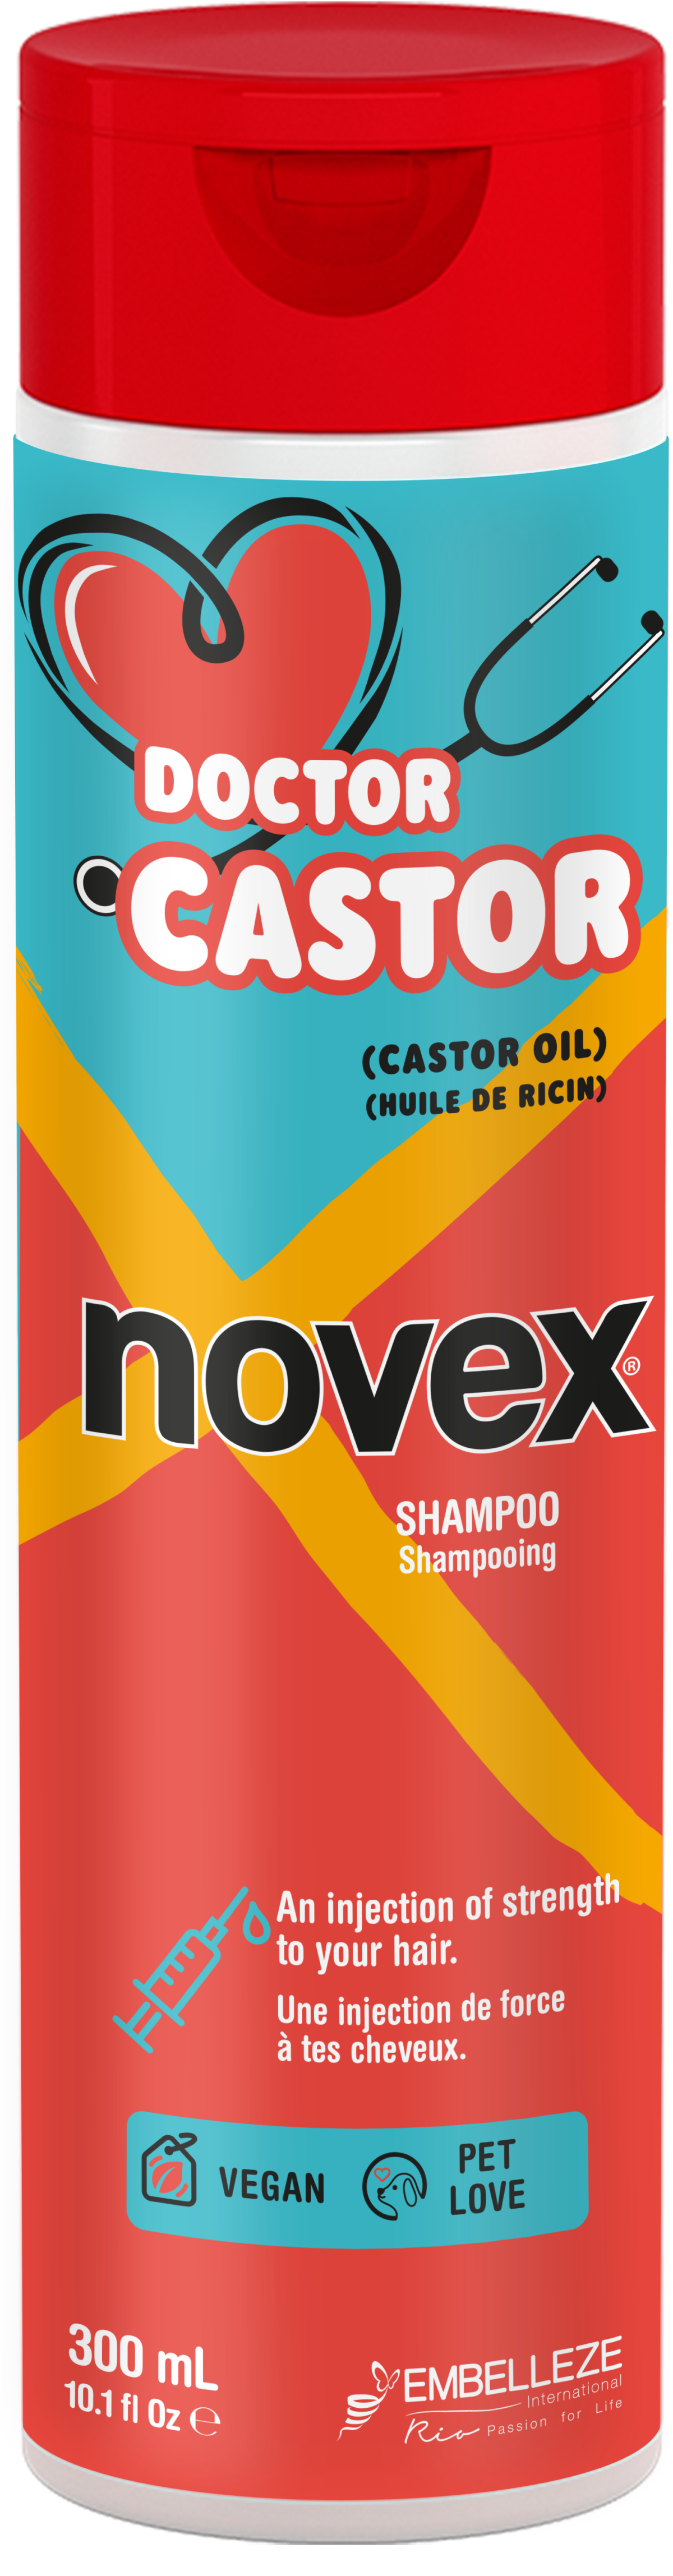 Shampoo Dr CASTOR novex 300ml